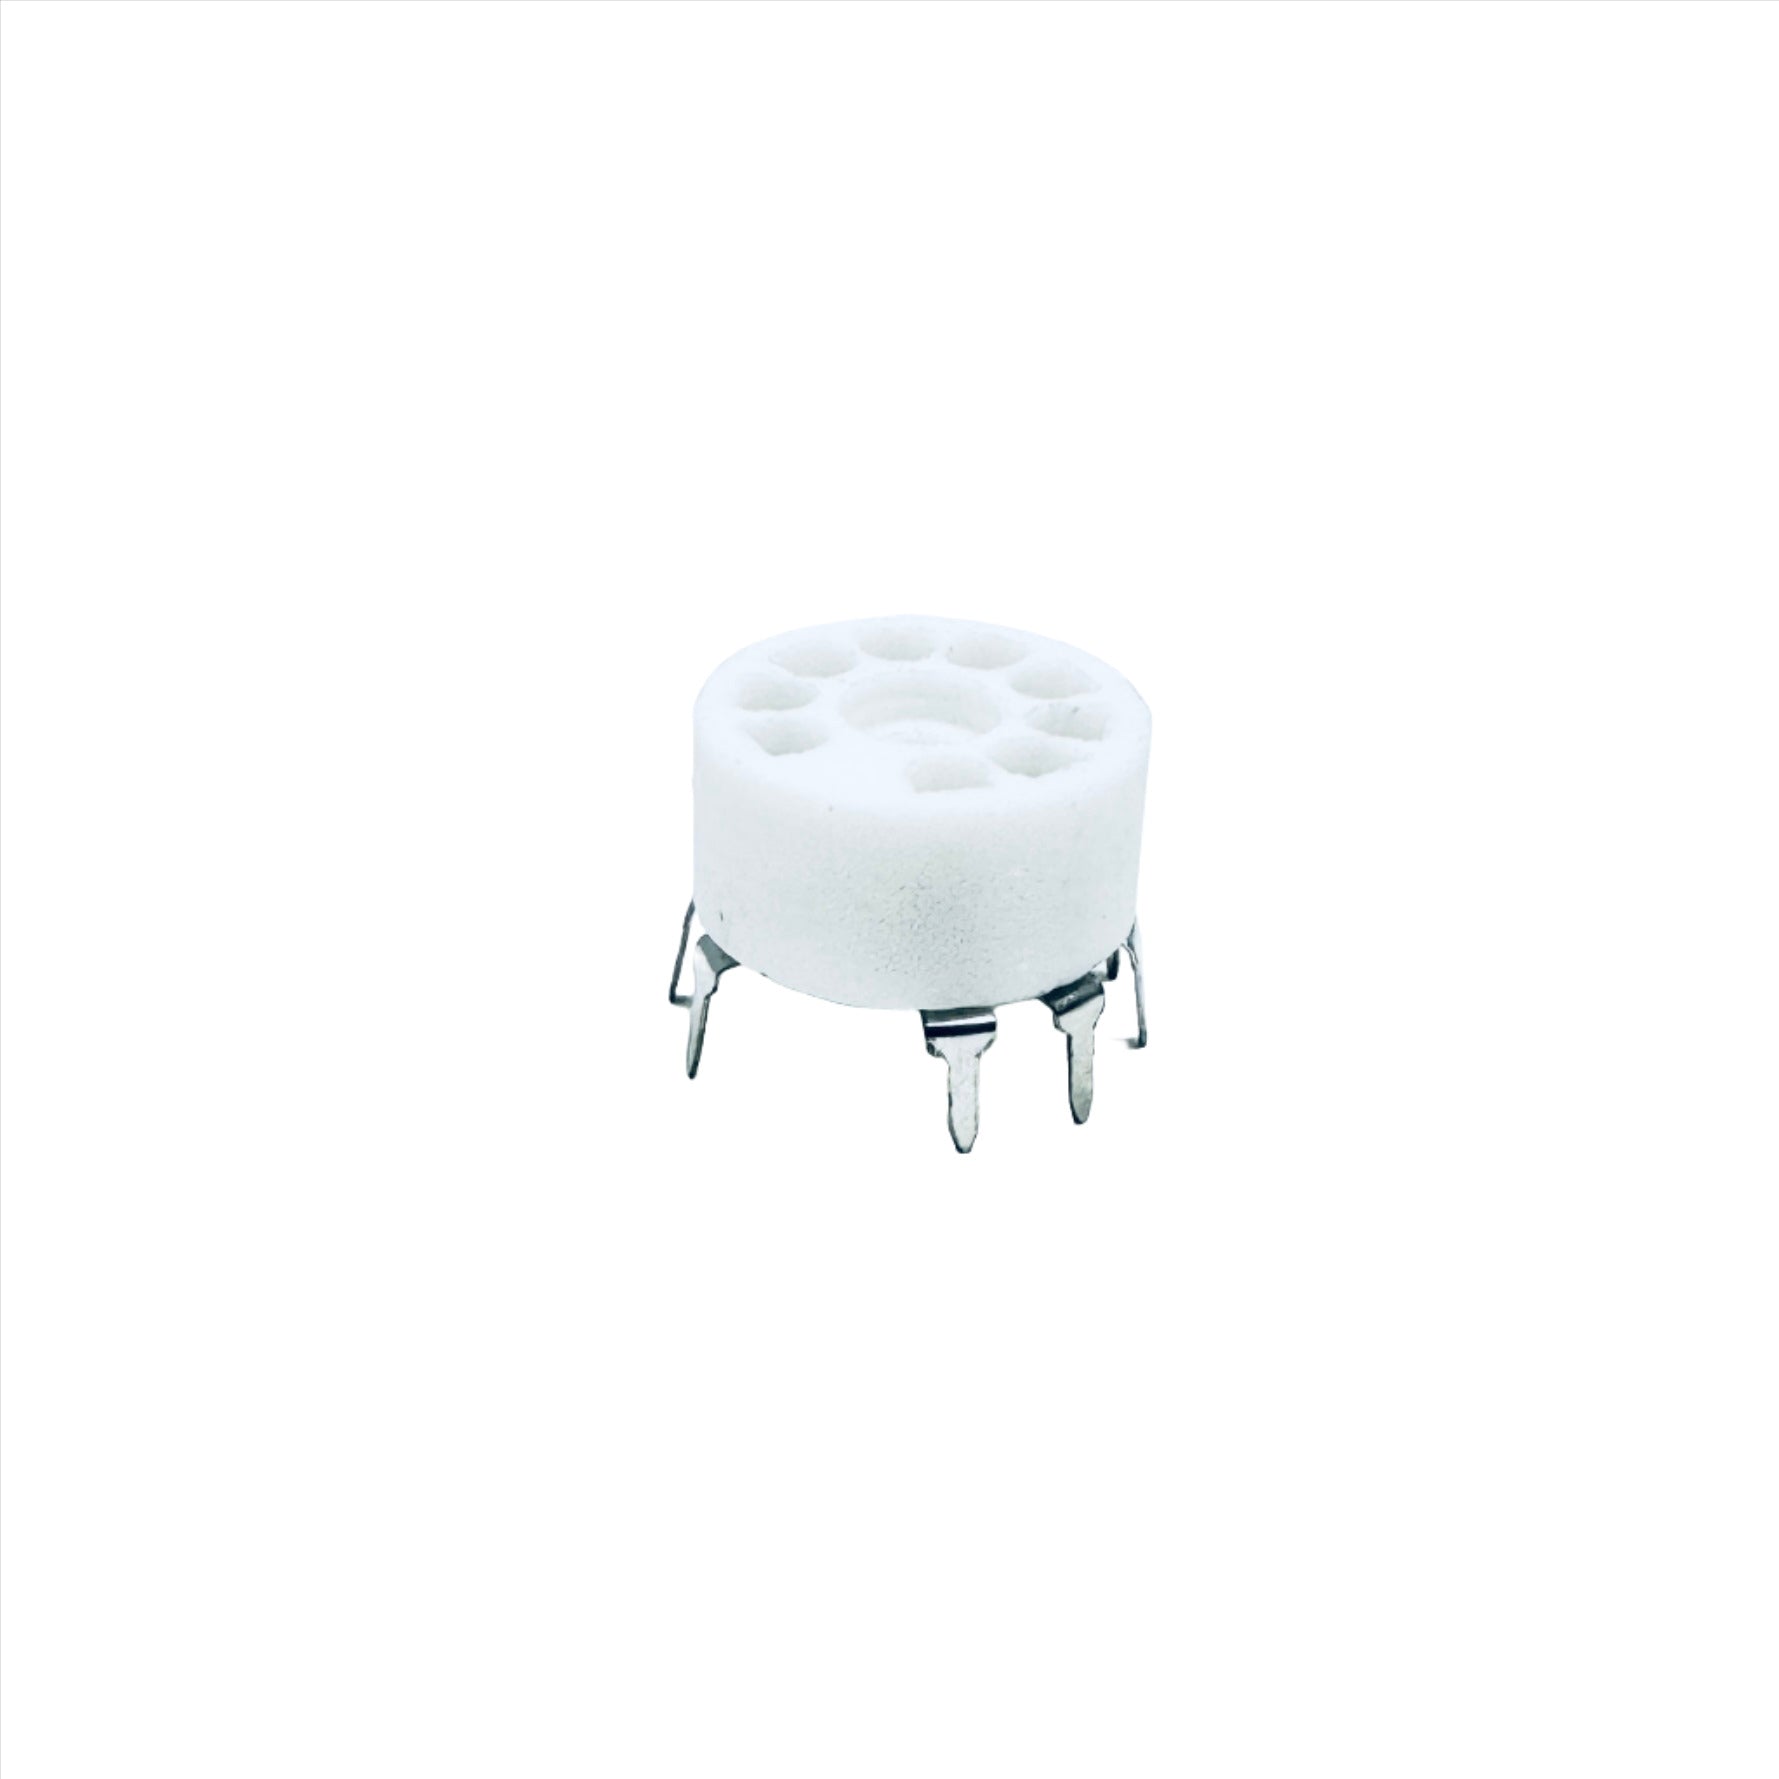 Ceramic 9 Pin Socket Small Footprint - TUS9PC2, ceramic socket, small pins, ruby sockets, 9- pin